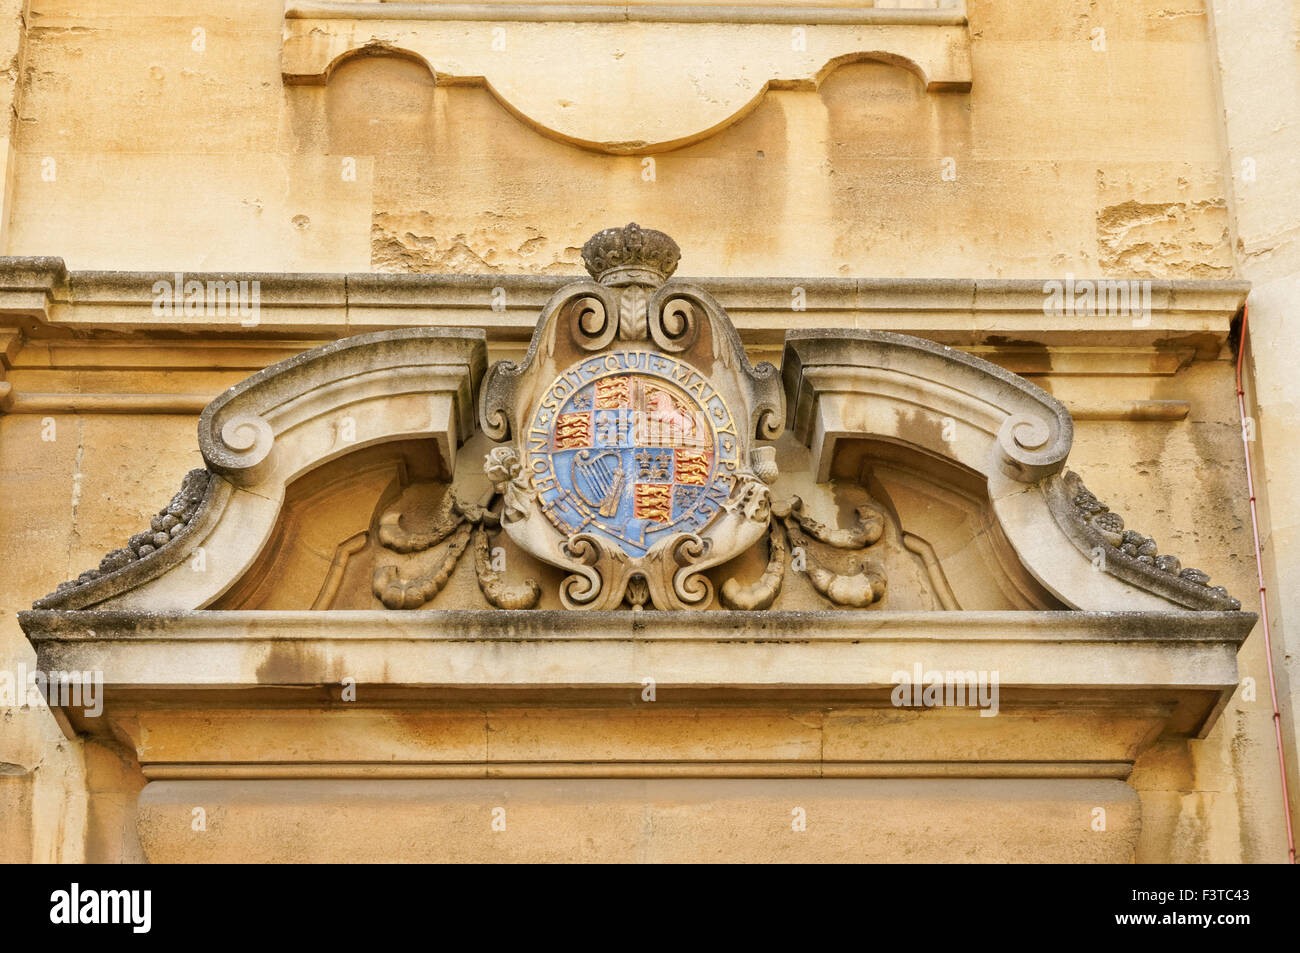 Insigne au cours de la Cour de la Bodleian Library (ancienne école) Quadrangle à Oxford Oxfordshire England Royaume-Uni UK Banque D'Images